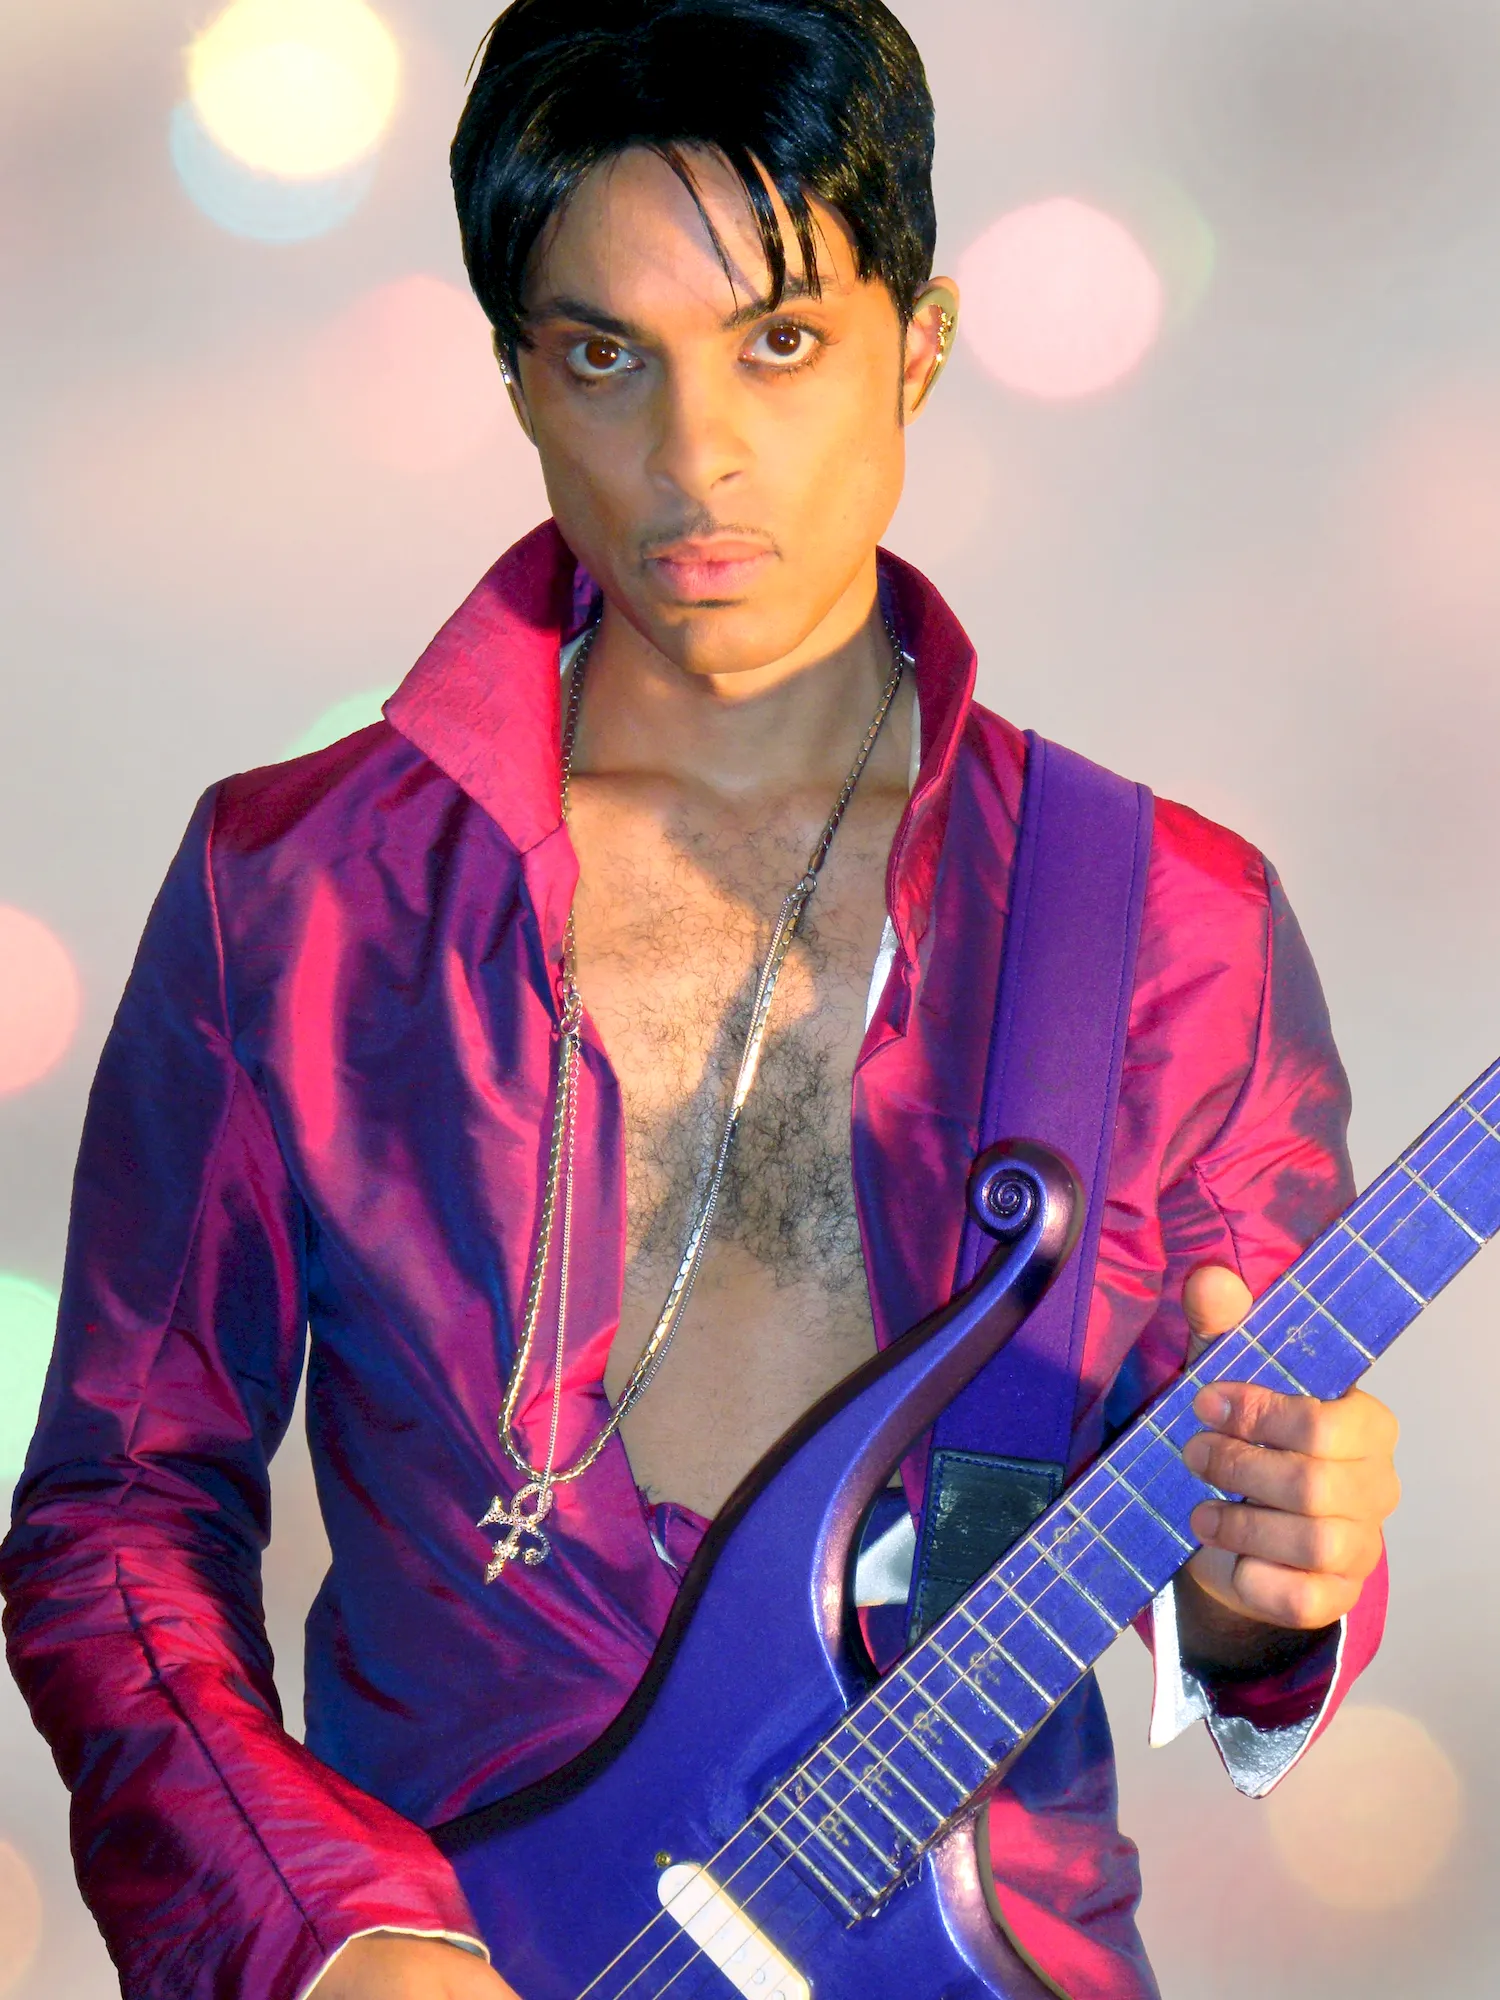 Prince певец